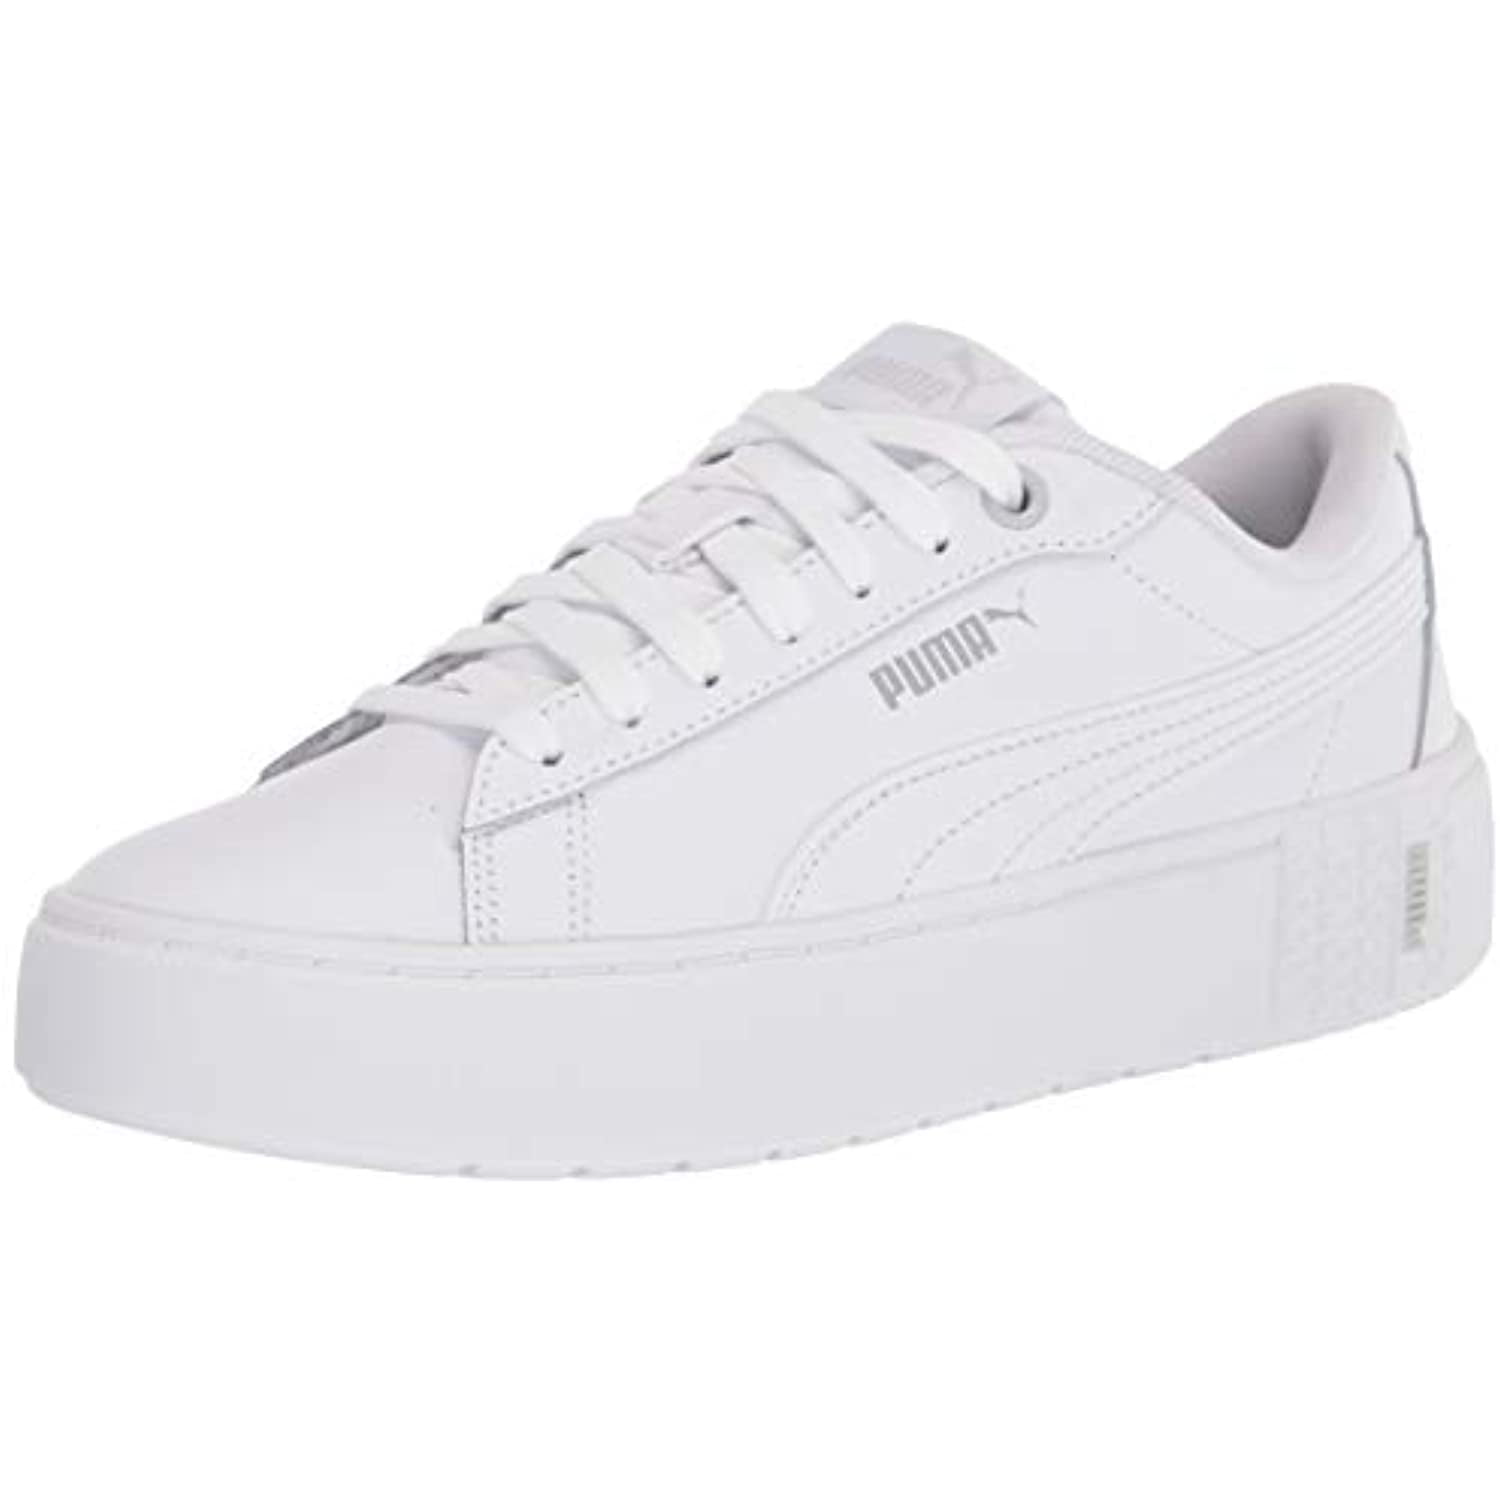 puma white sneakers womens